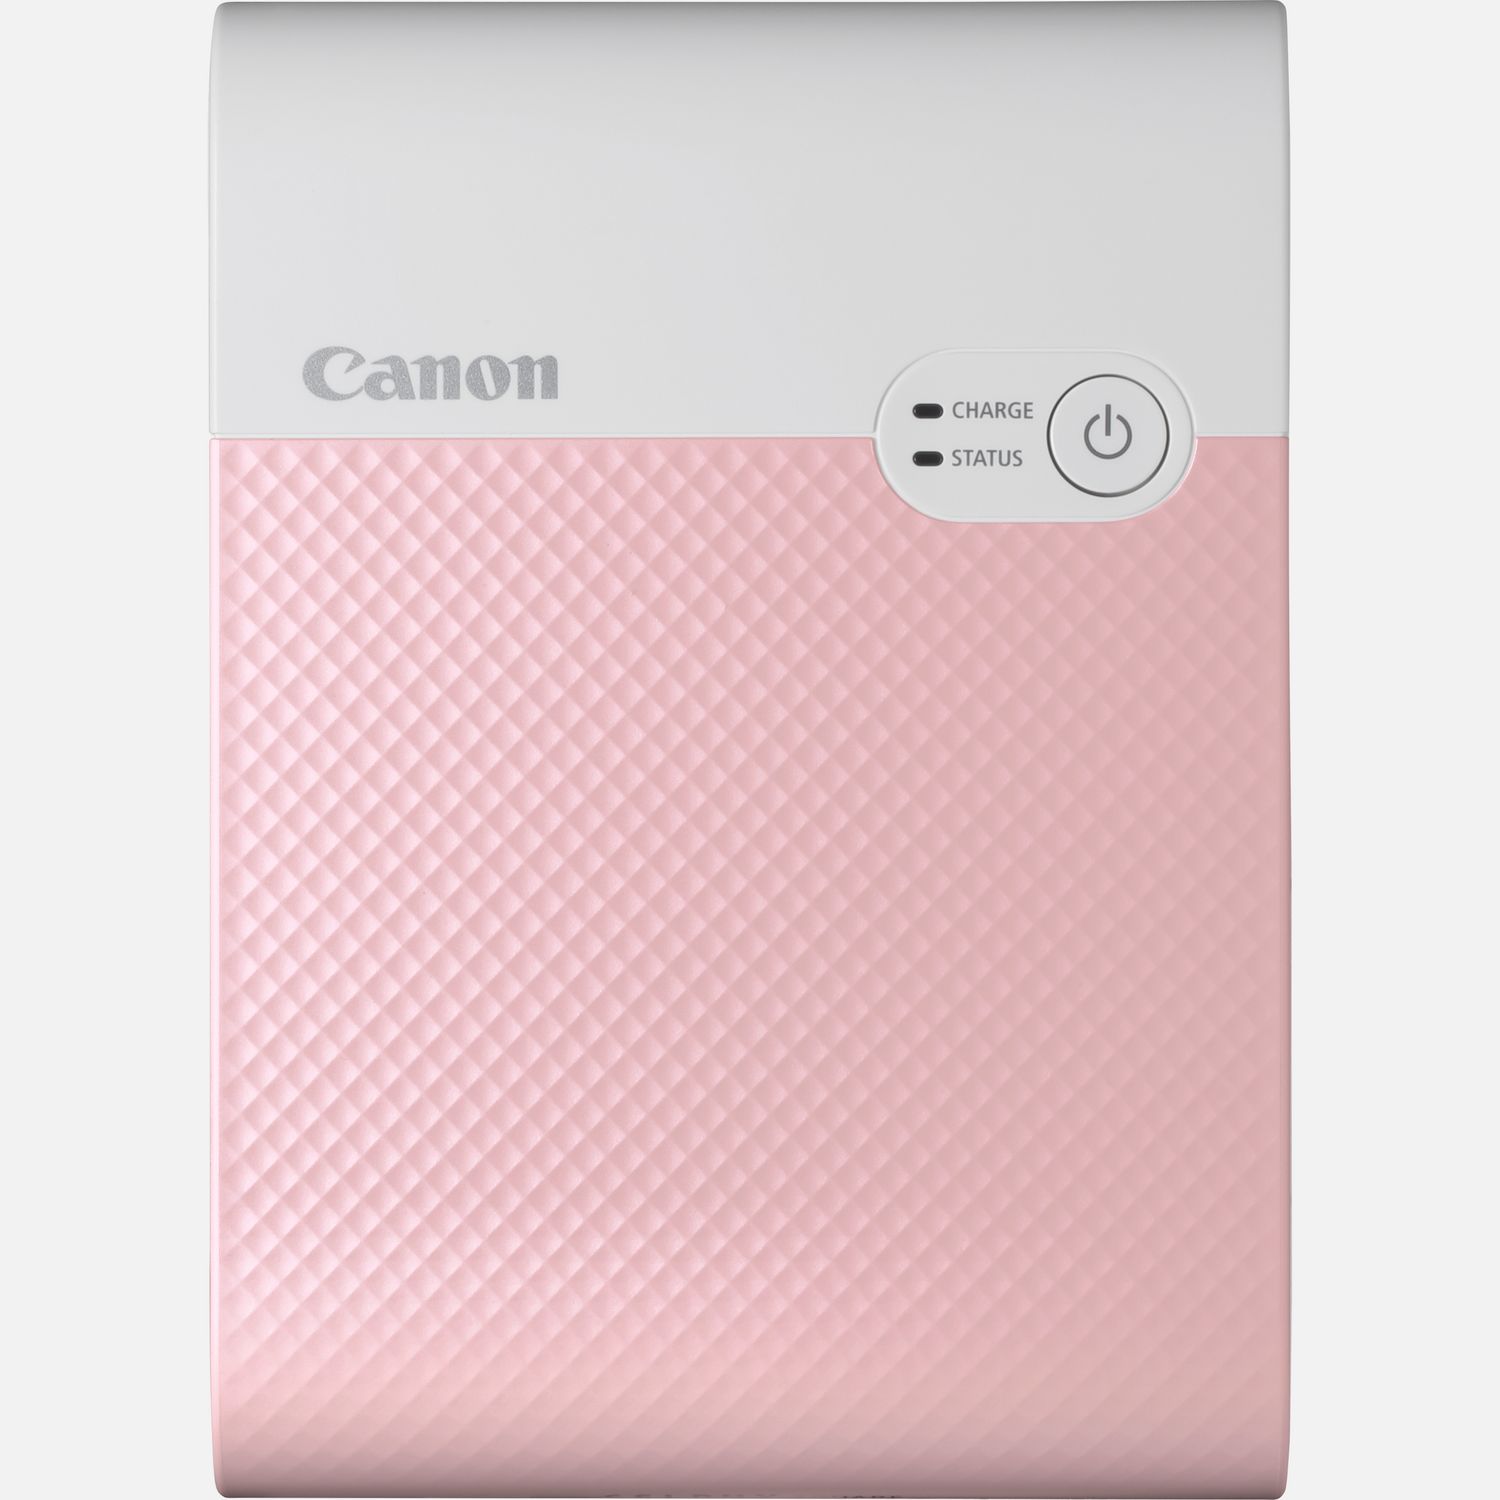 Image of Stampante fotografica portatile wireless a colori Canon SELPHY SQUARE QX10, rosa